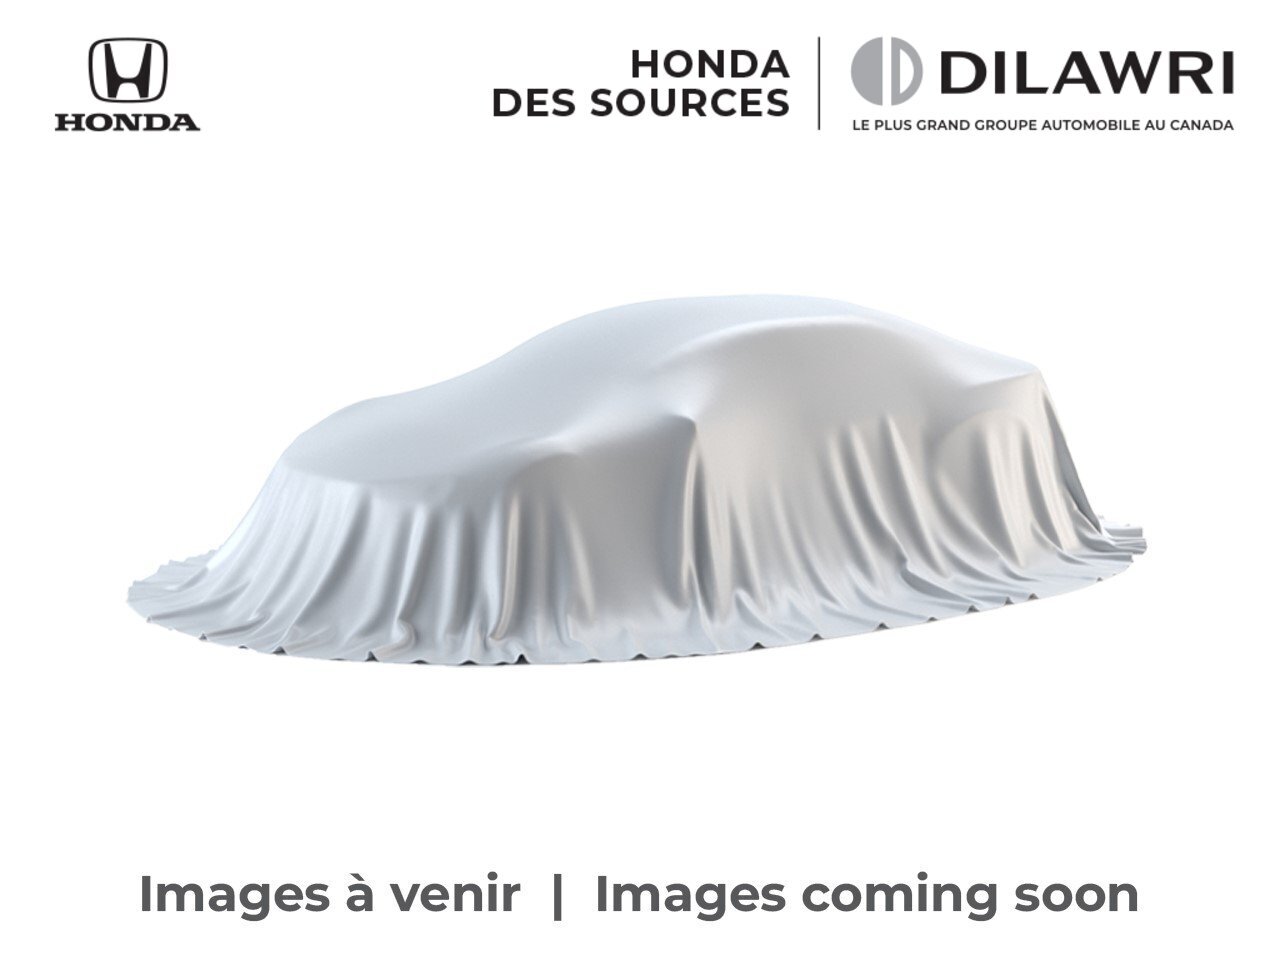 2019 Honda HR-V LX, 4X4, Carplay, Bluetooth, Caméra, Jantes, USB 4